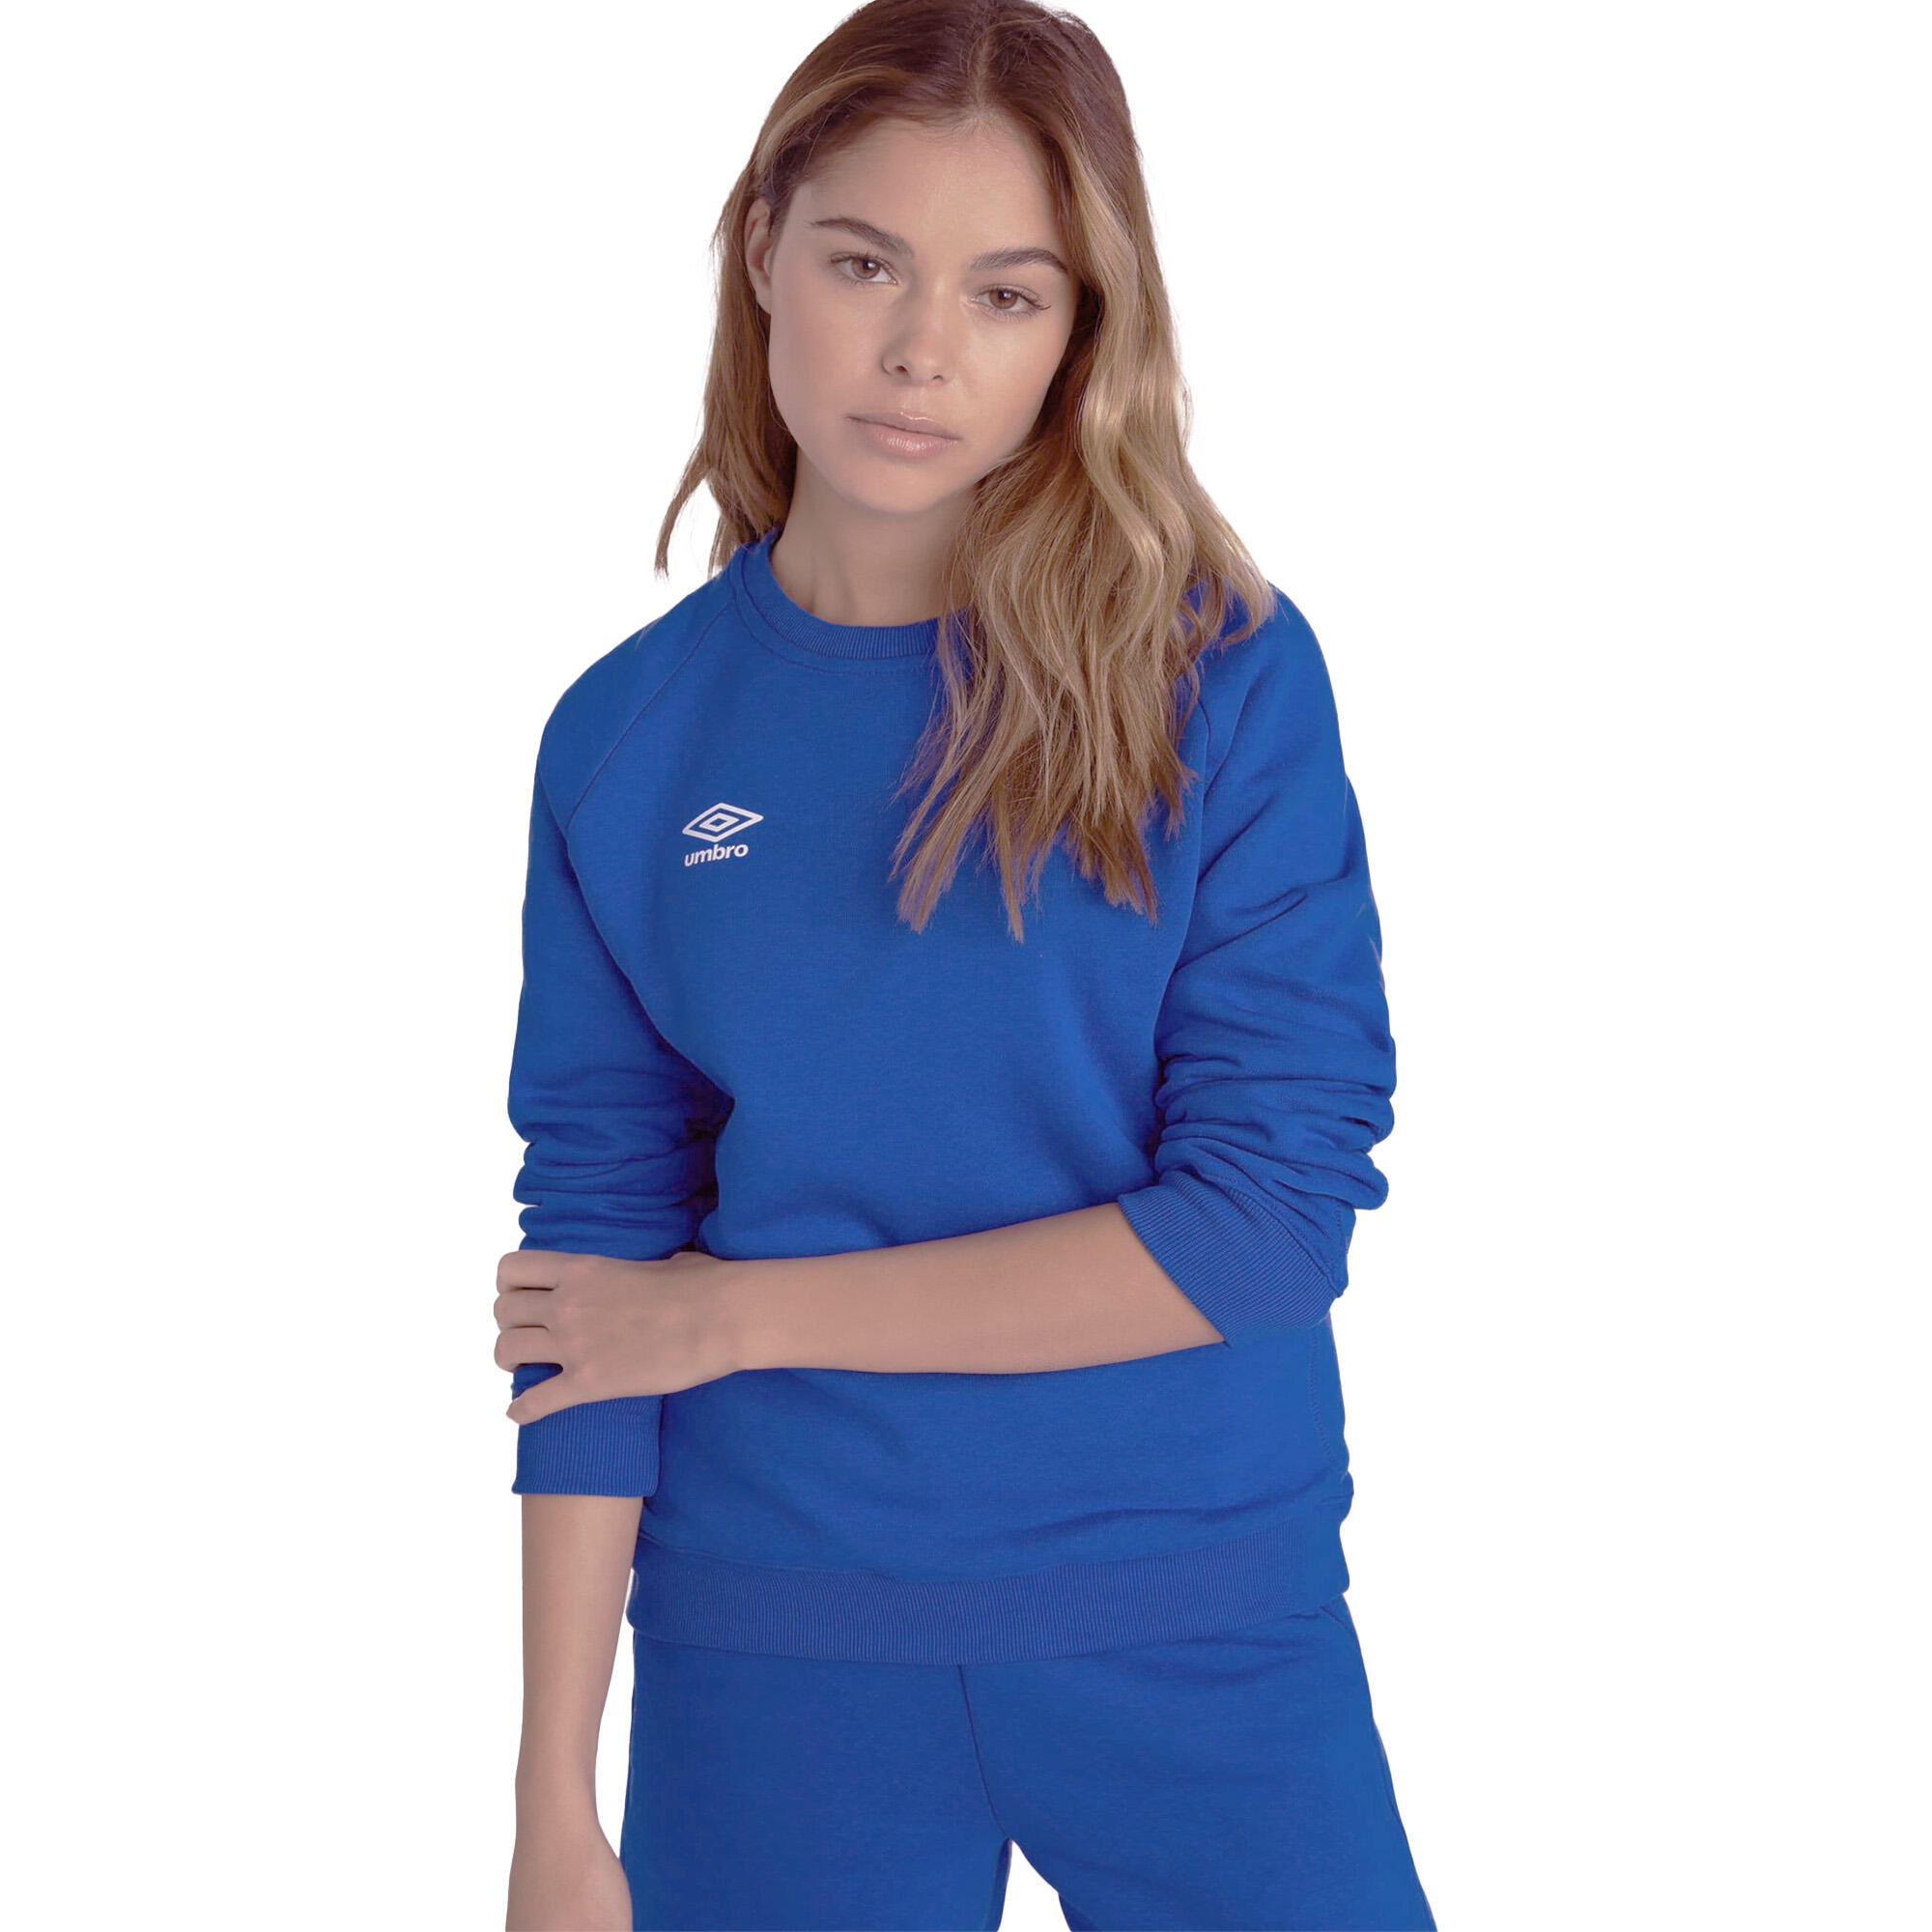 Womens/Ladies Club Leisure Sweatshirt (Royal Blue/White) 2/3